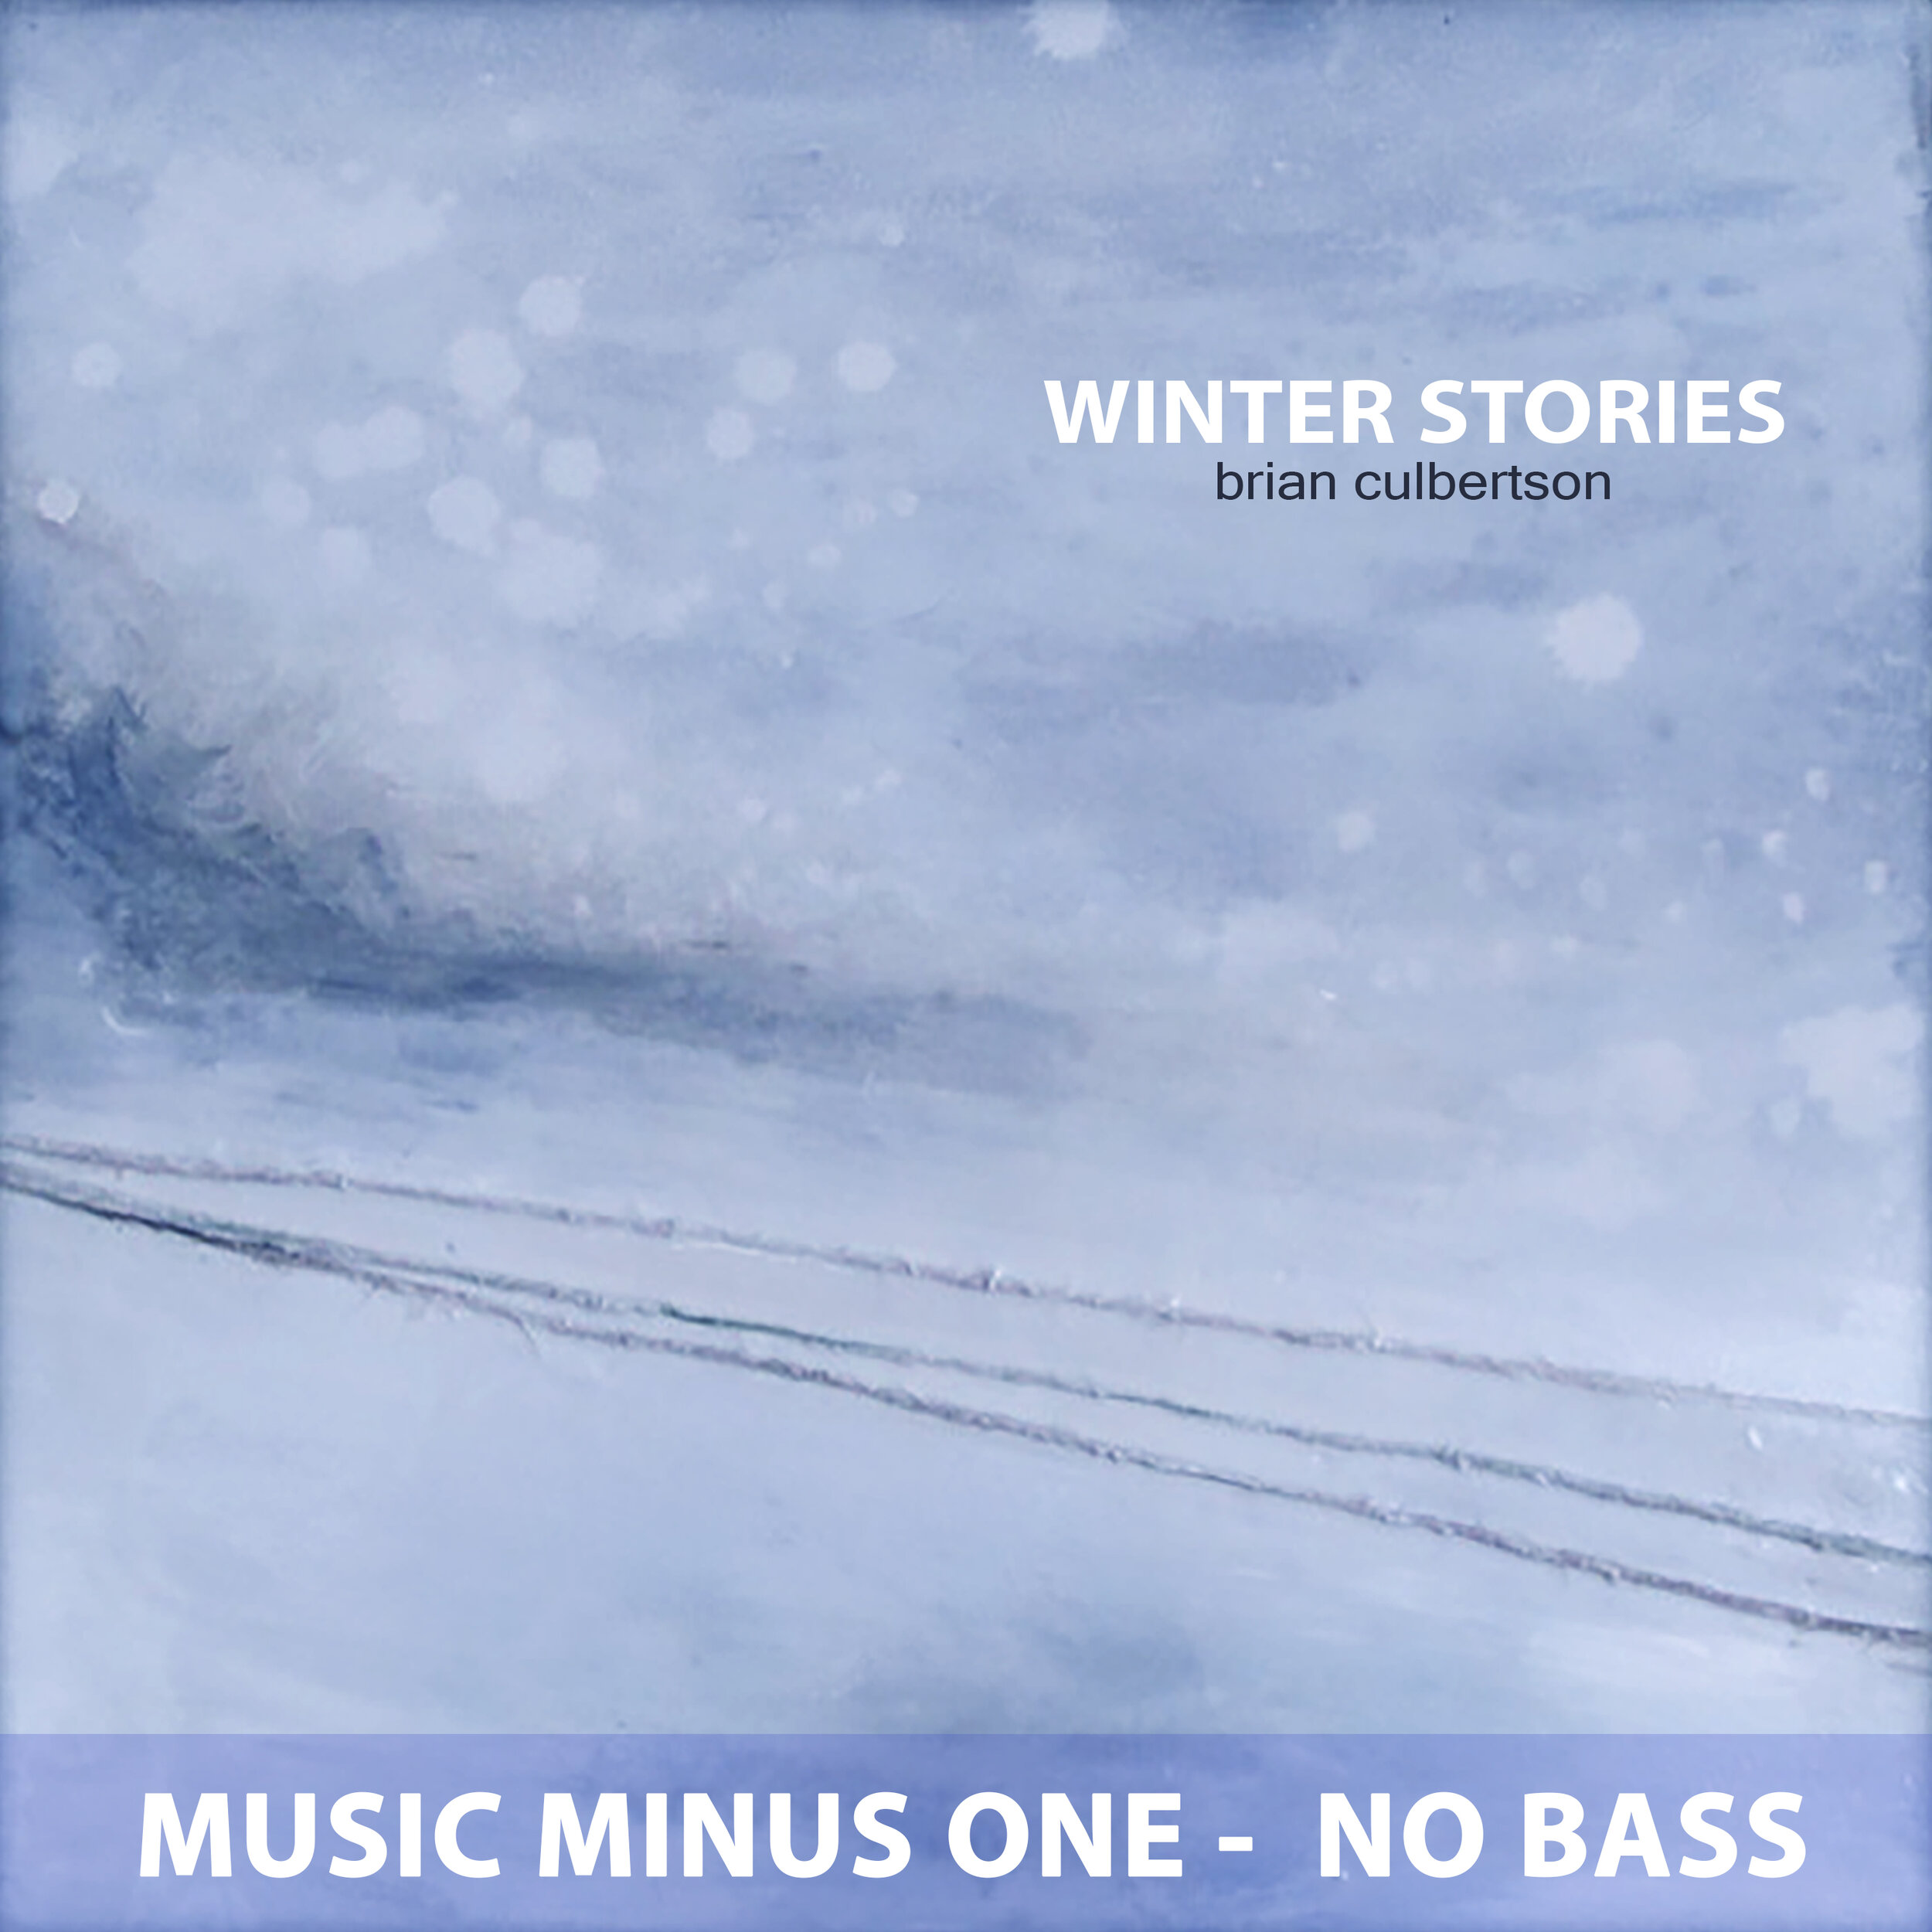 Winter Stories Cover NO BASS.jpg